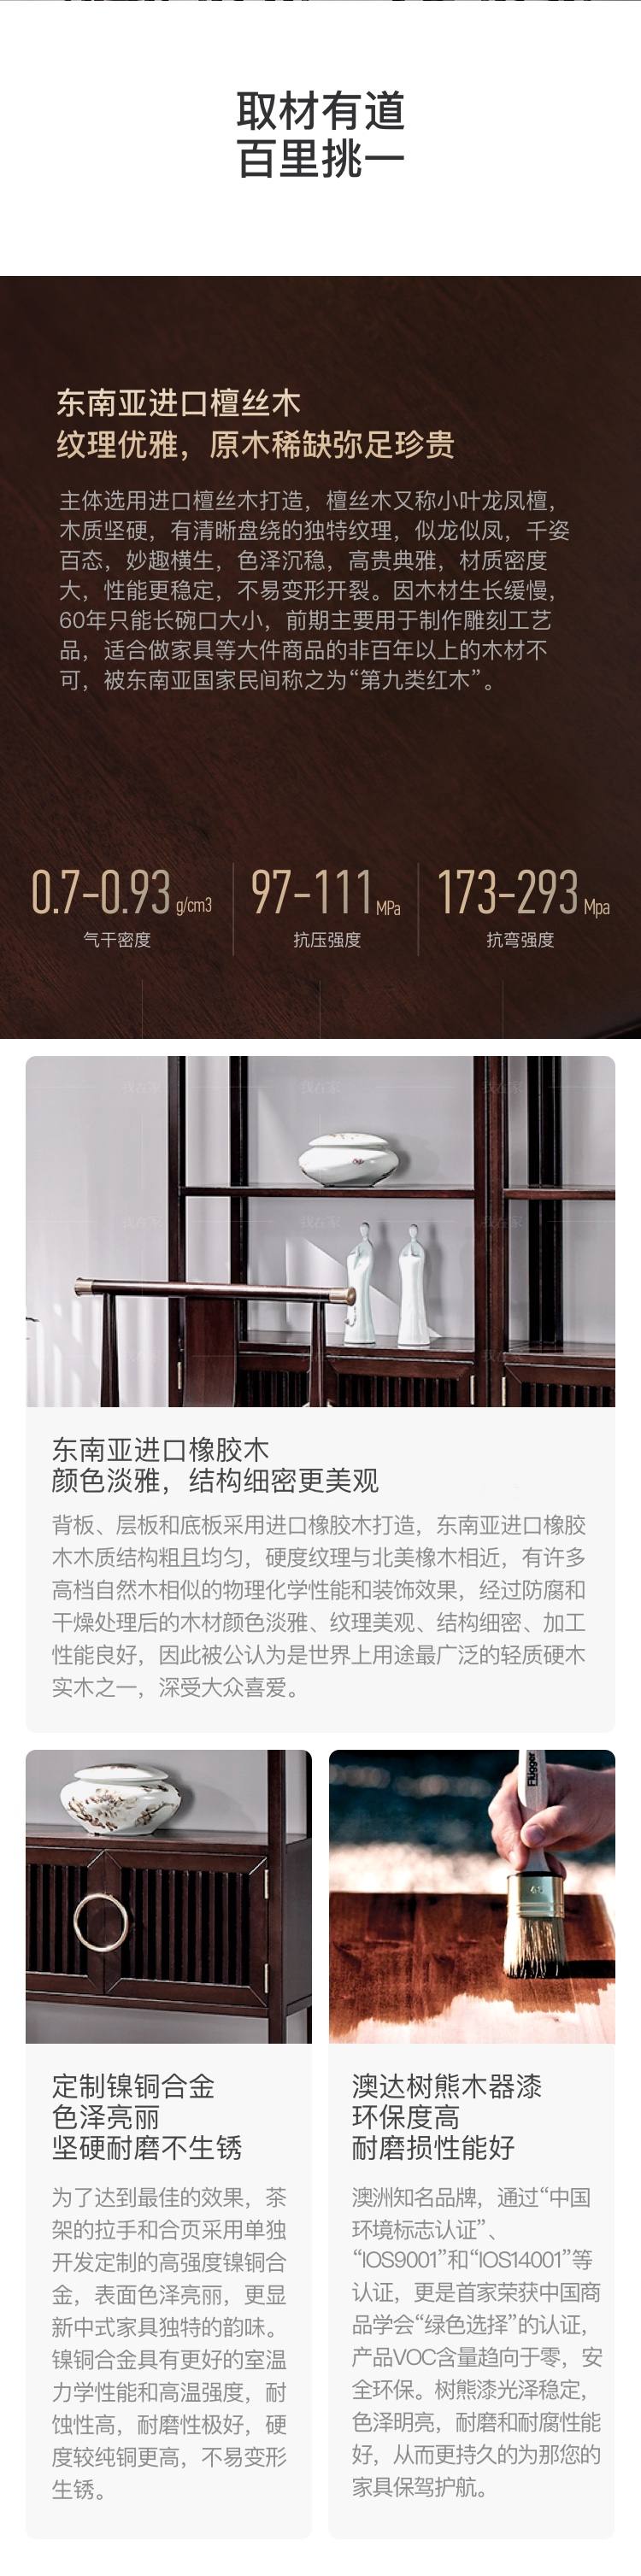 新中式风格似锦茶架的家具详细介绍